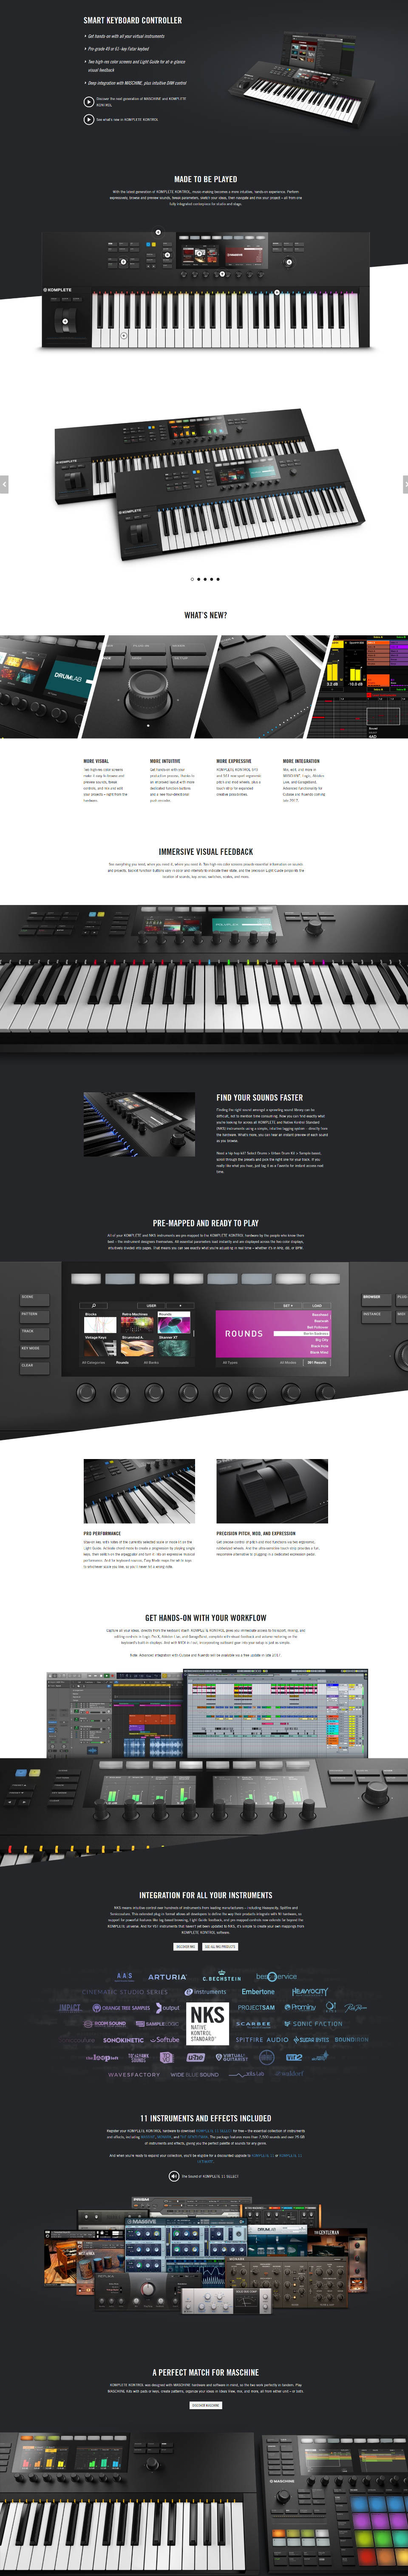 BJs Sound & Lighting - Kontrol S Website Product MK2 960